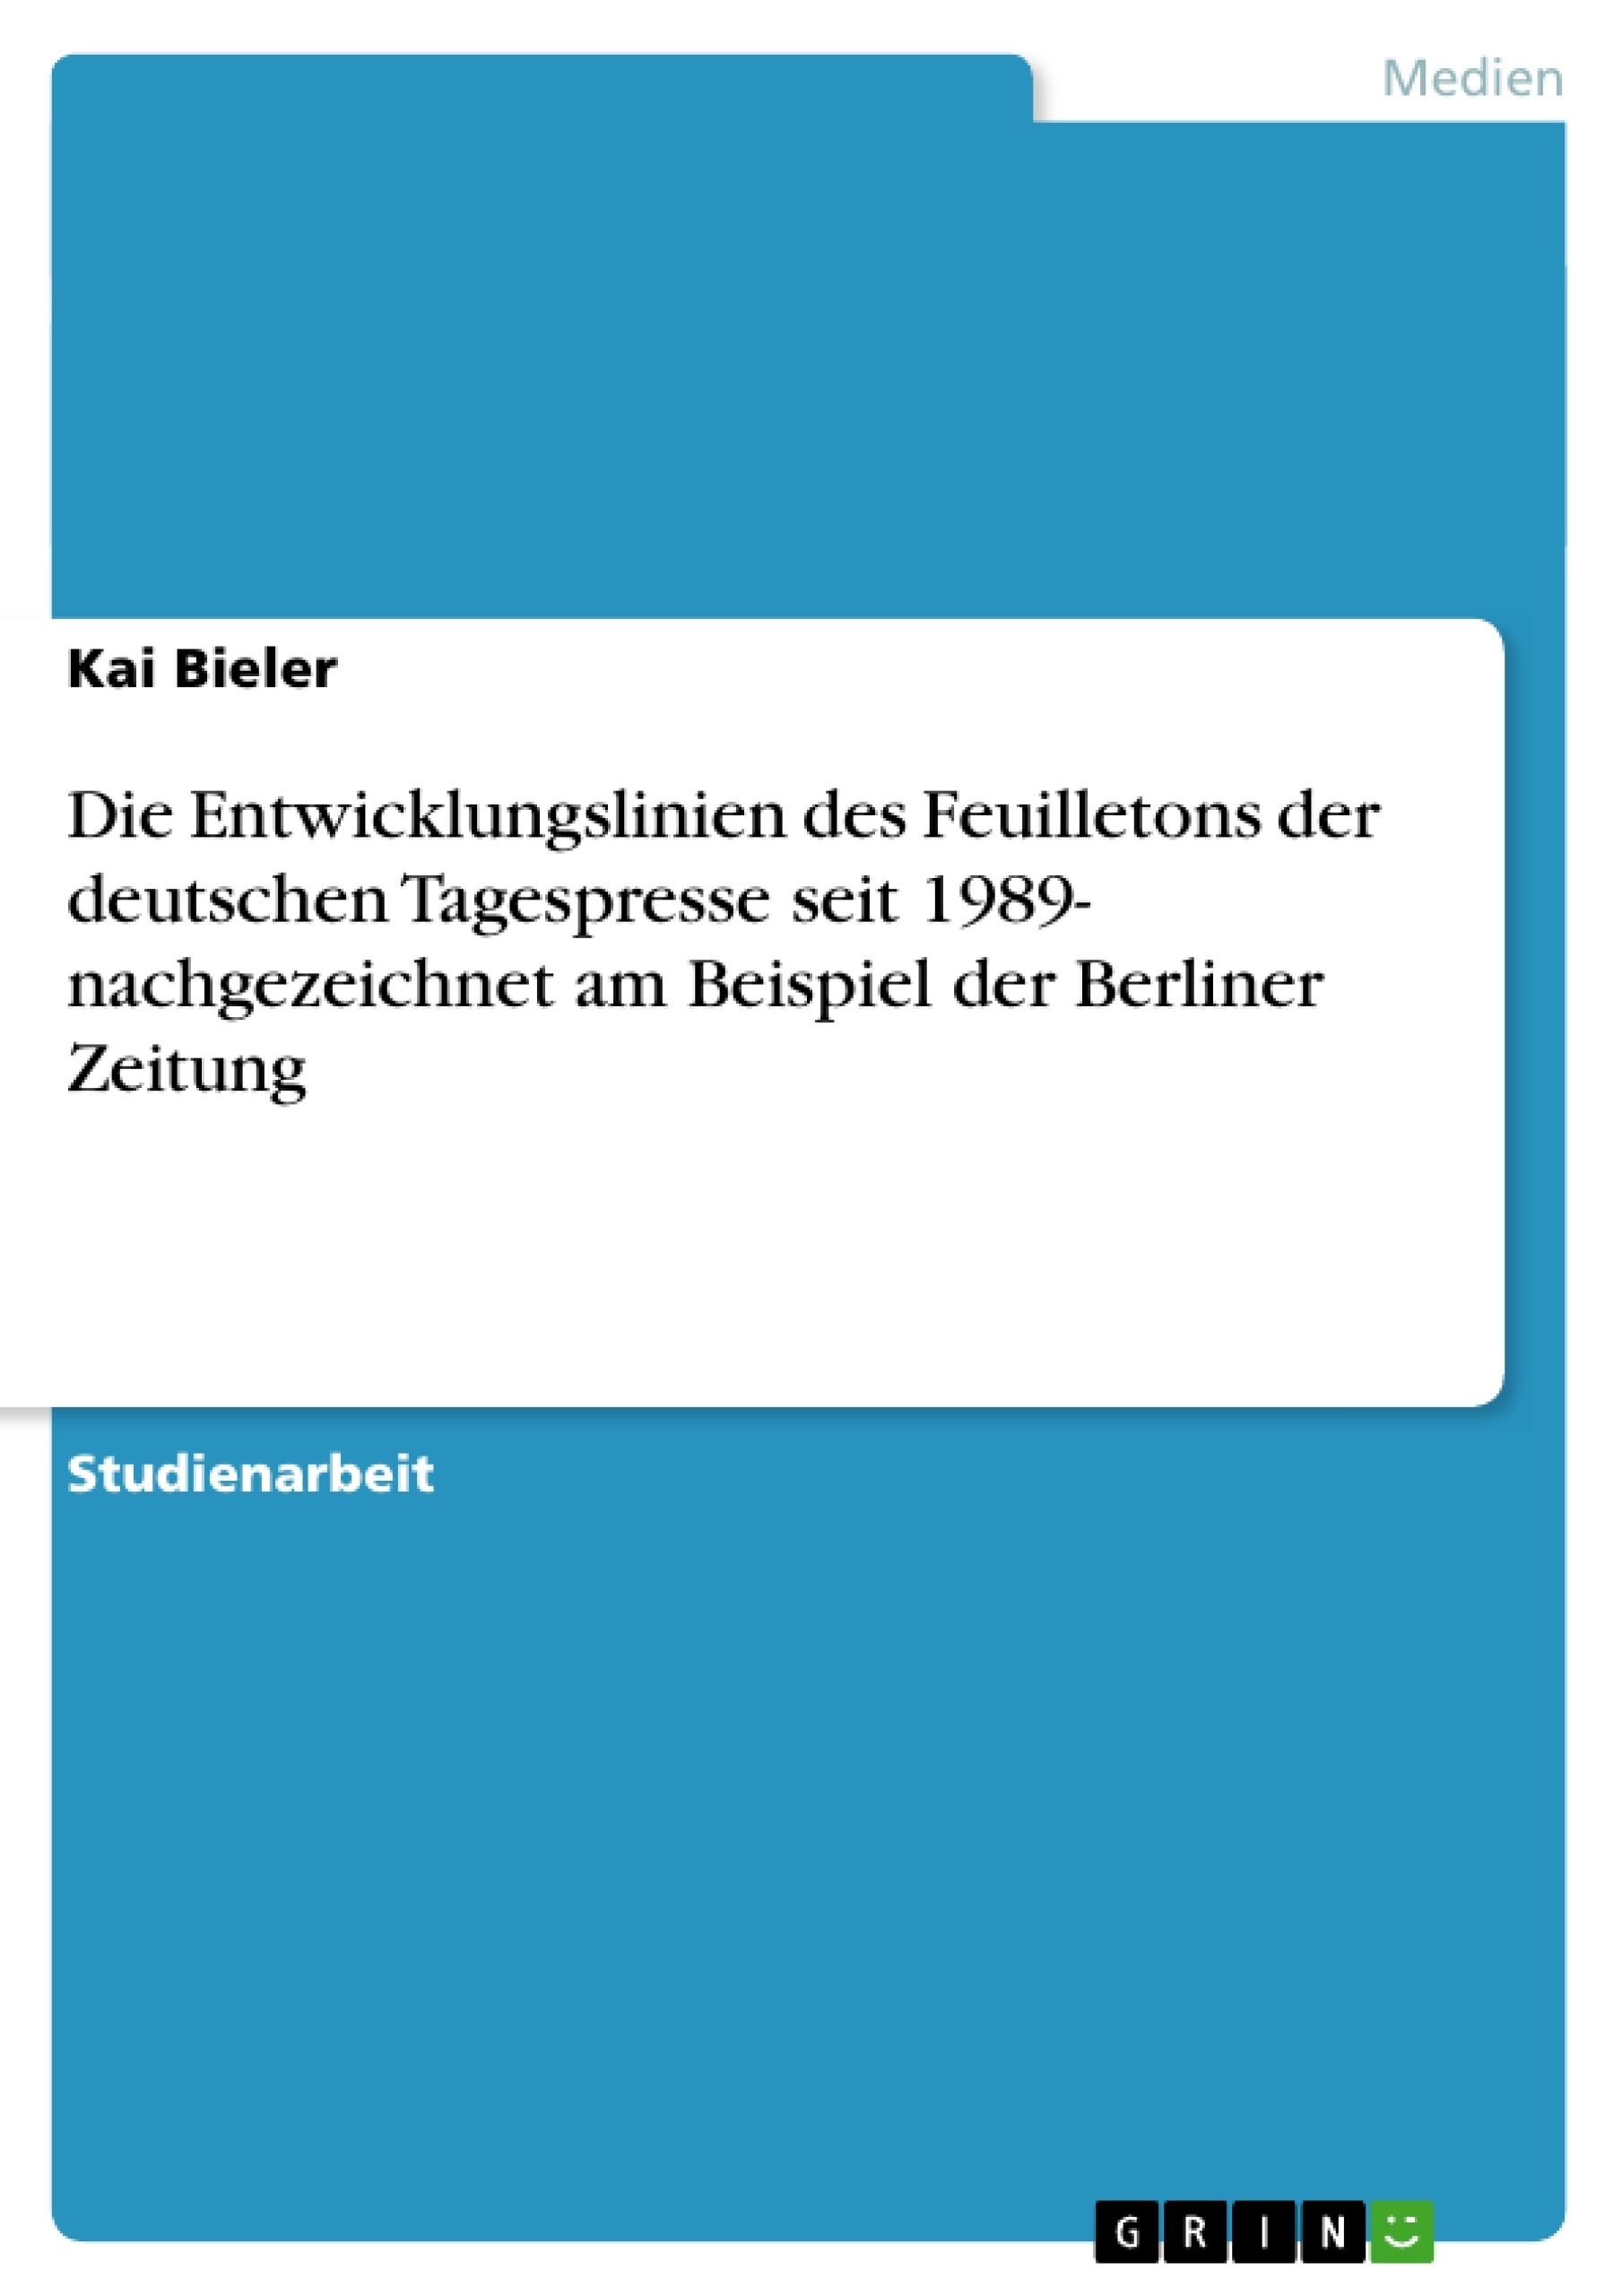 Titel: Die Entwicklungslinien des Feuilletons der deutschen Tagespresse seit 1989- nachgezeichnet am Beispiel der Berliner Zeitung 